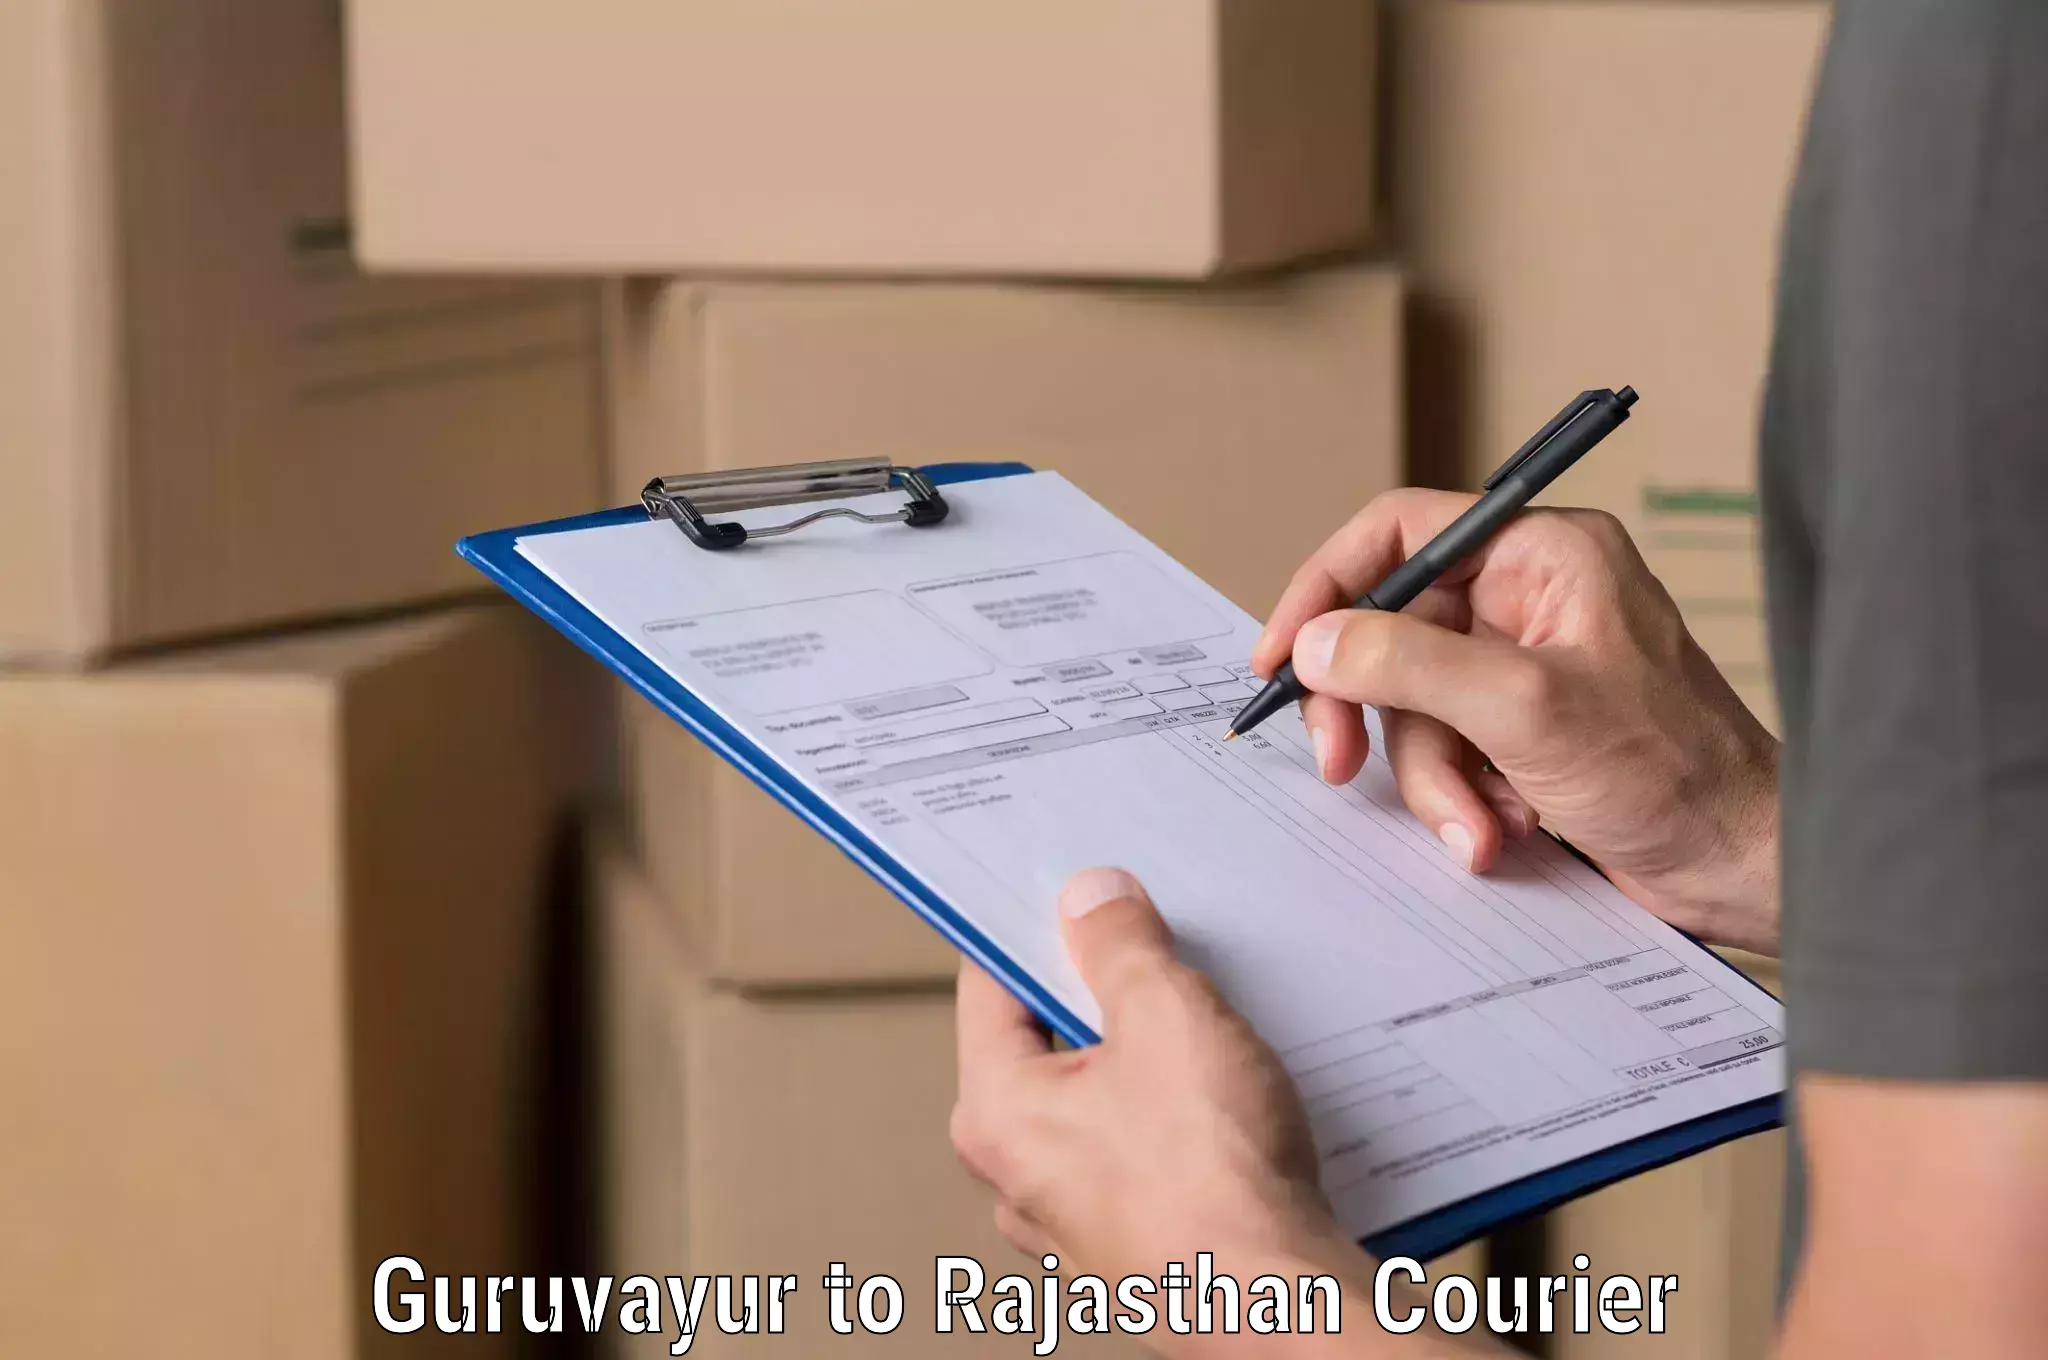 Smart shipping technology Guruvayur to Banar